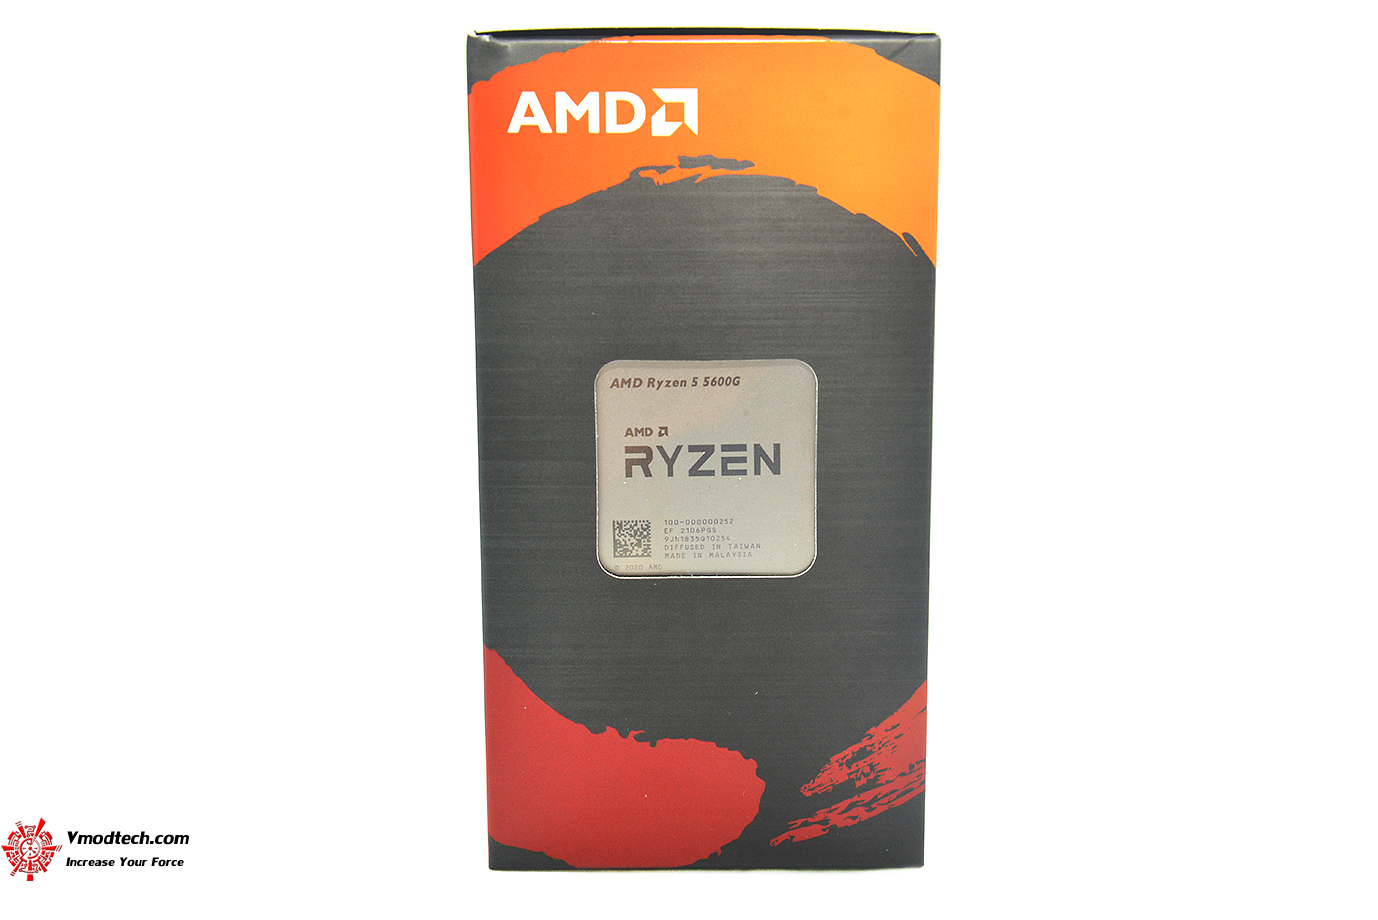 dsc 4638 AMD RYZEN 5 5600G PROCESSOR REVIEW